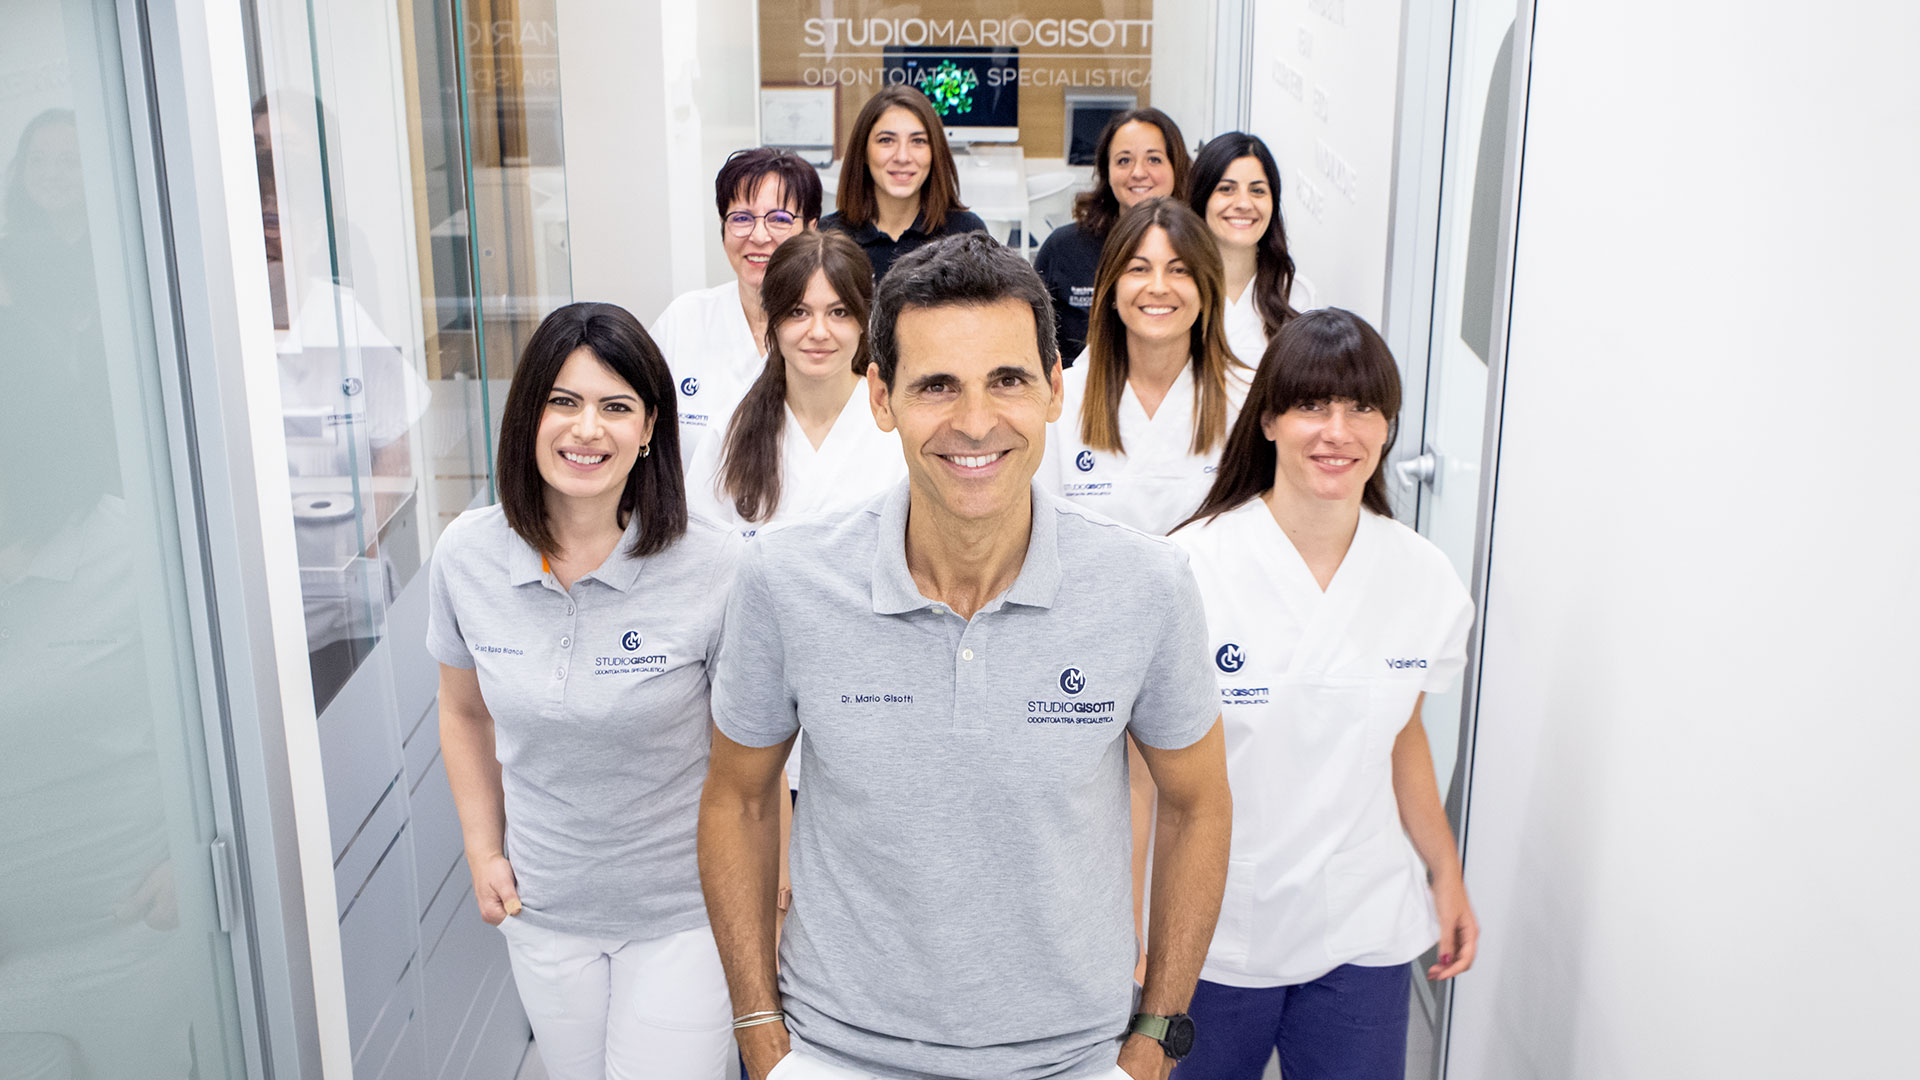 Il team di Odontoiatri e Igienisti e Aso di Studio Mario Gisotti